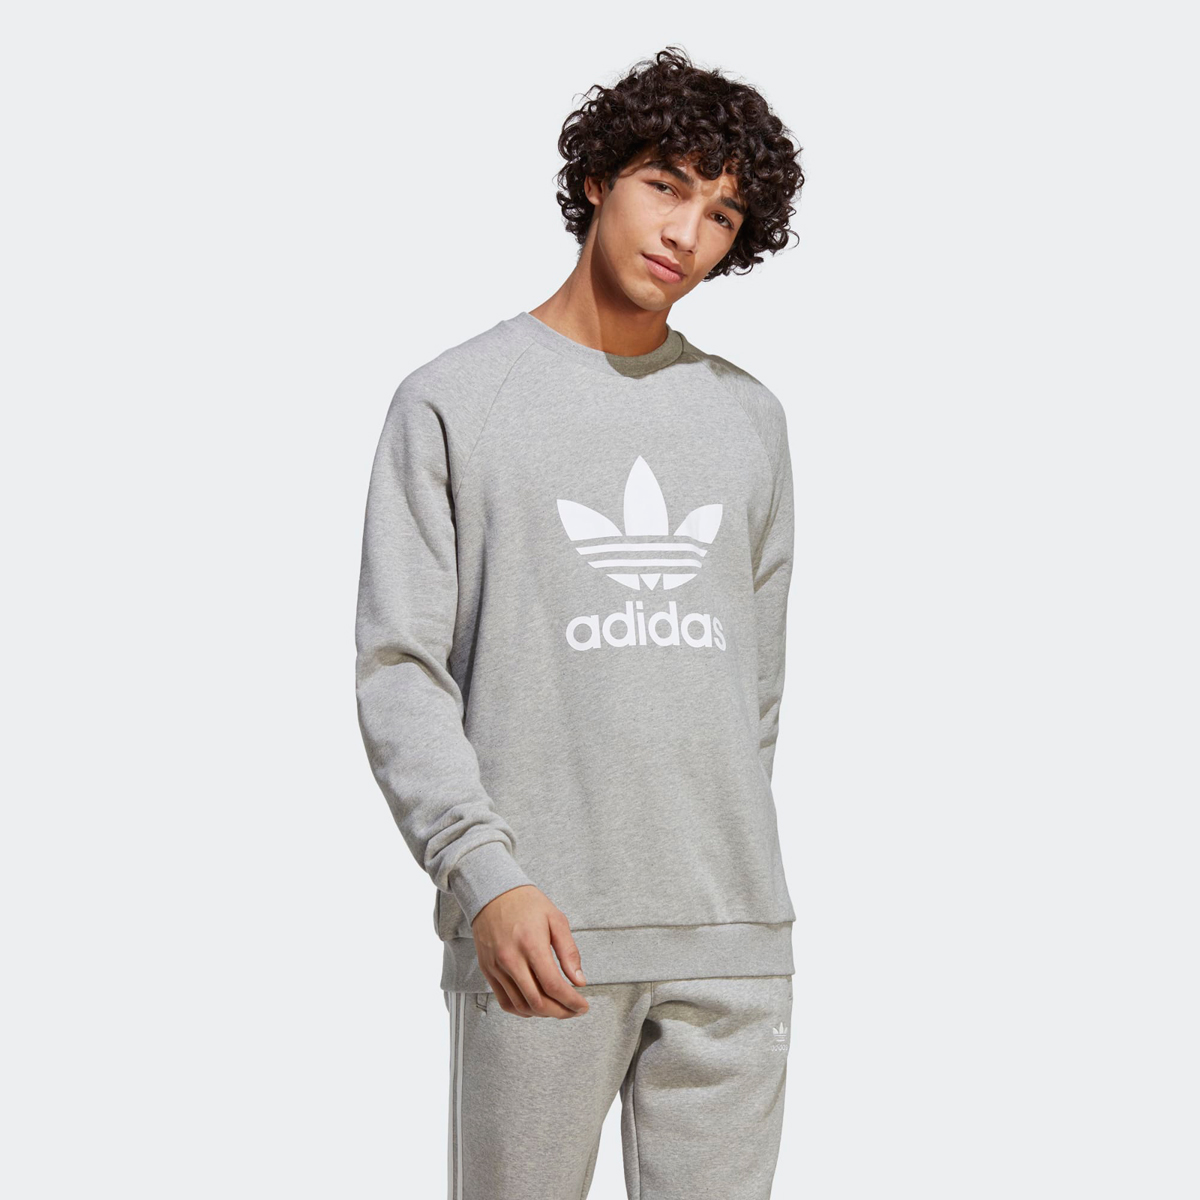 adidas-Adicolor-Trefoil-Sweatshirt-Grey